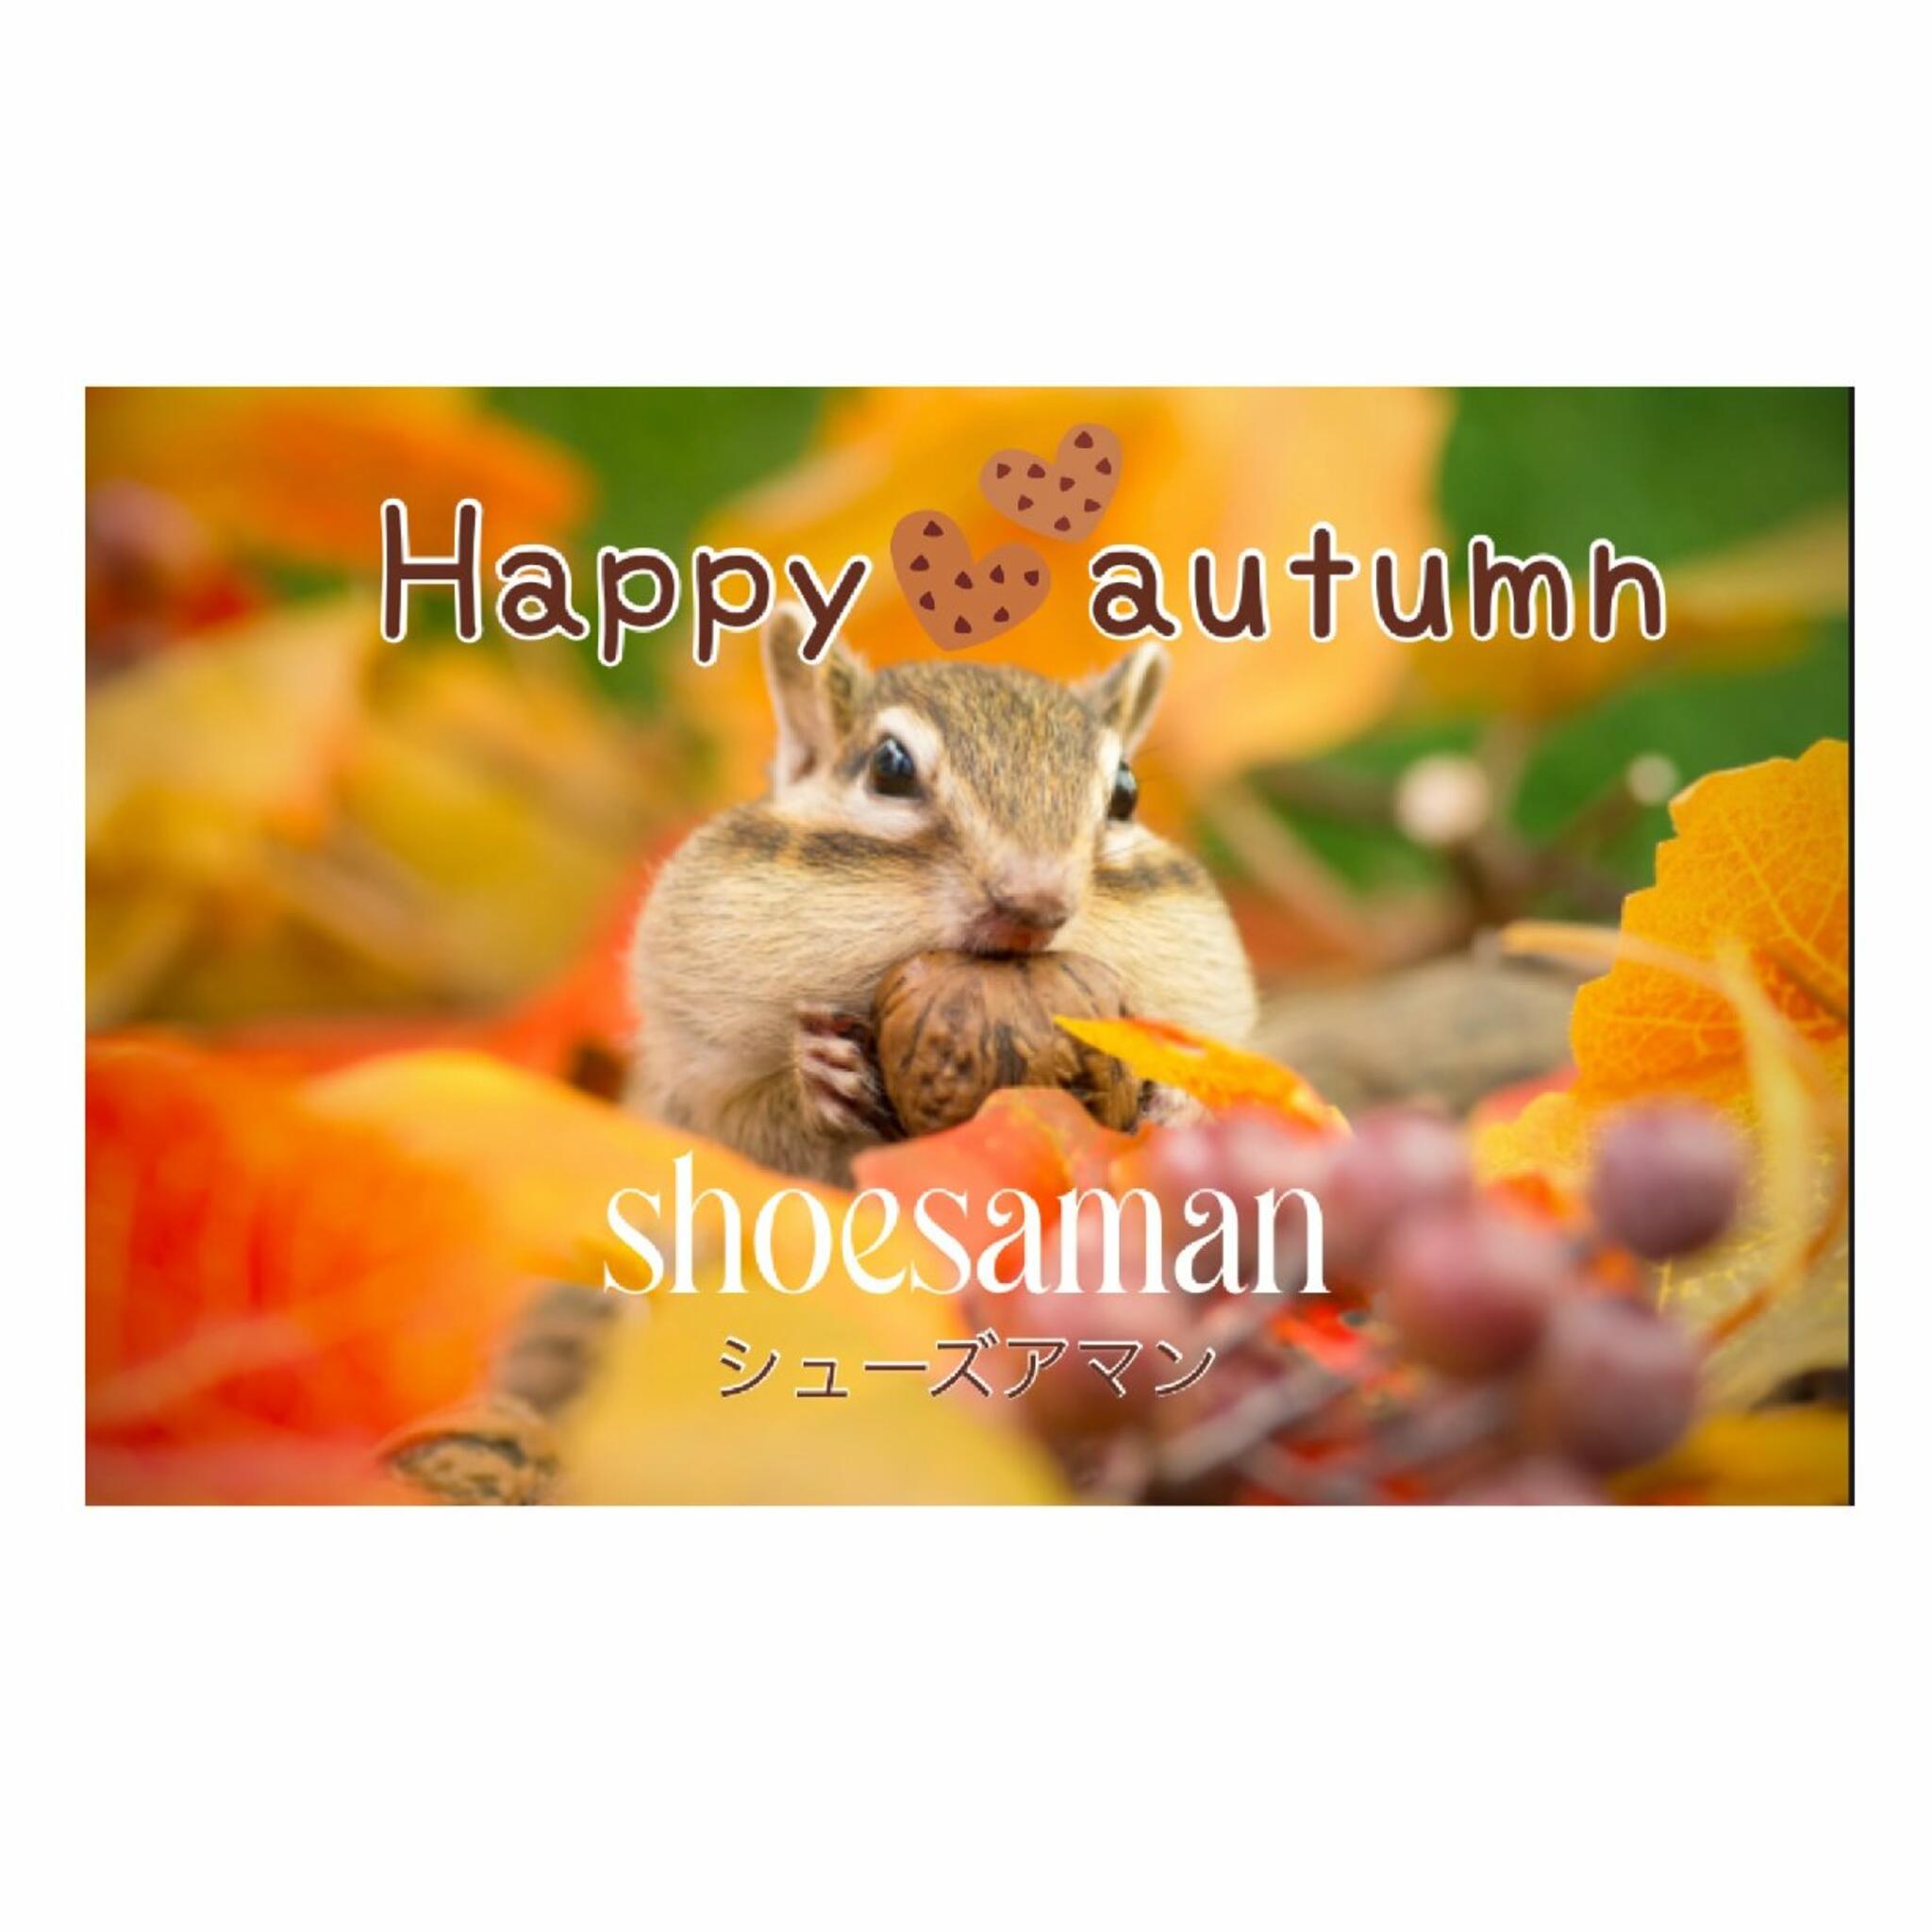 シューズアマン　shoesamanからのお知らせ(Happy autumn〜秋🍂始まるよ　#スニーカー#ブーツ#クロッグ#靴#レディース#メンズ)に関する写真